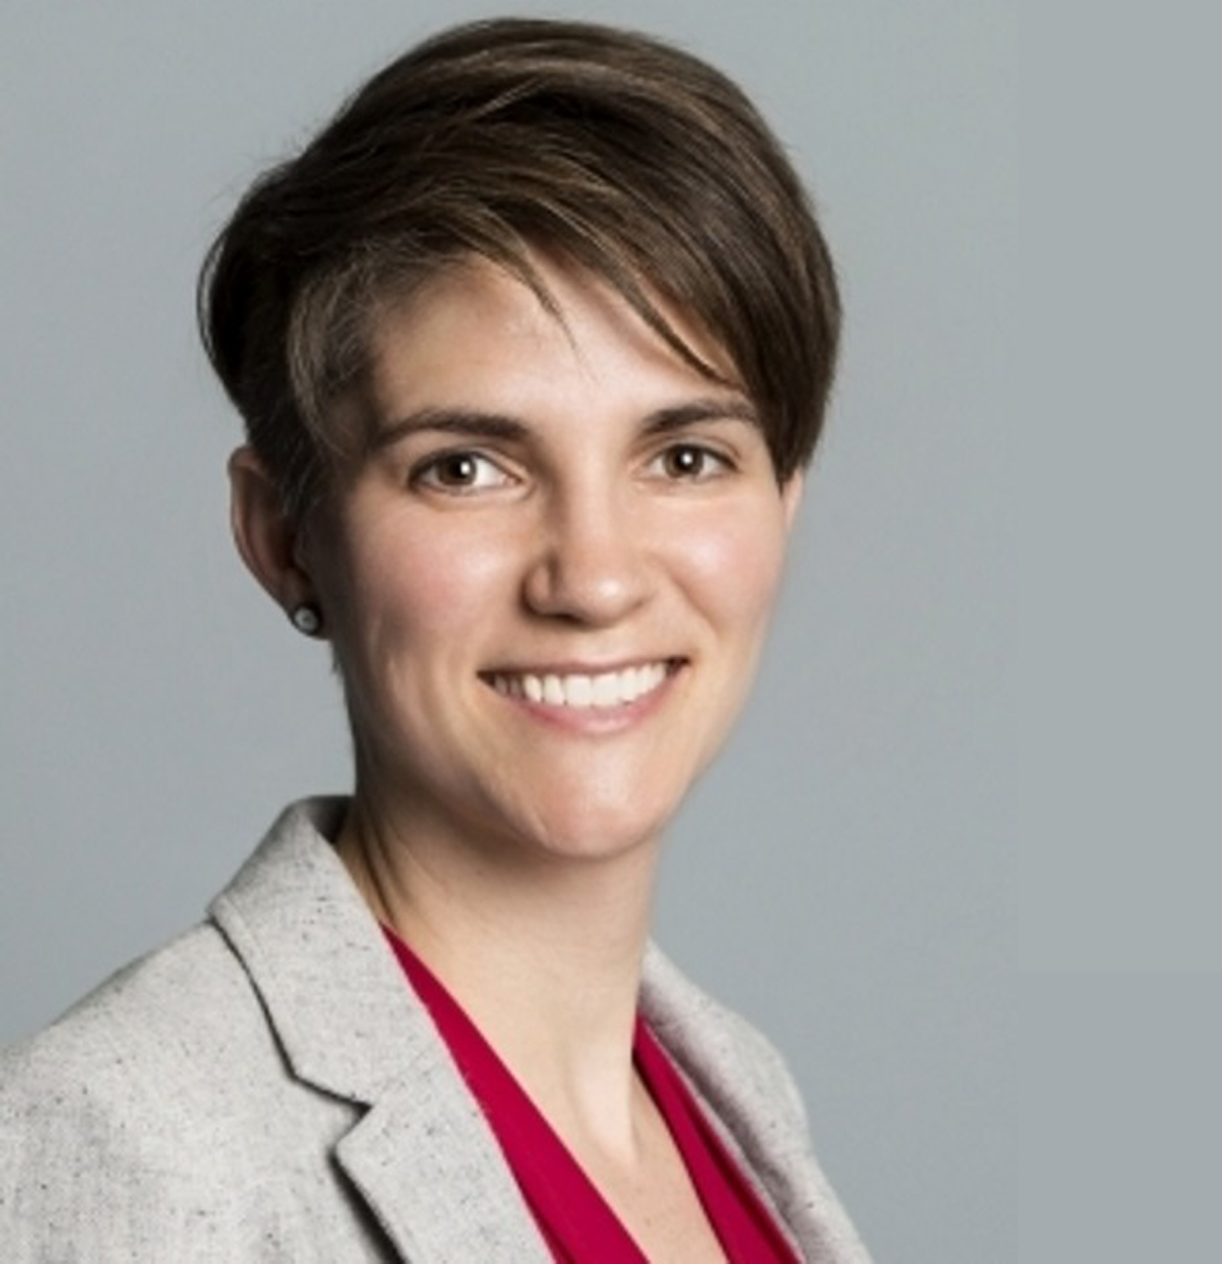 Sarah Pedersen, PhD